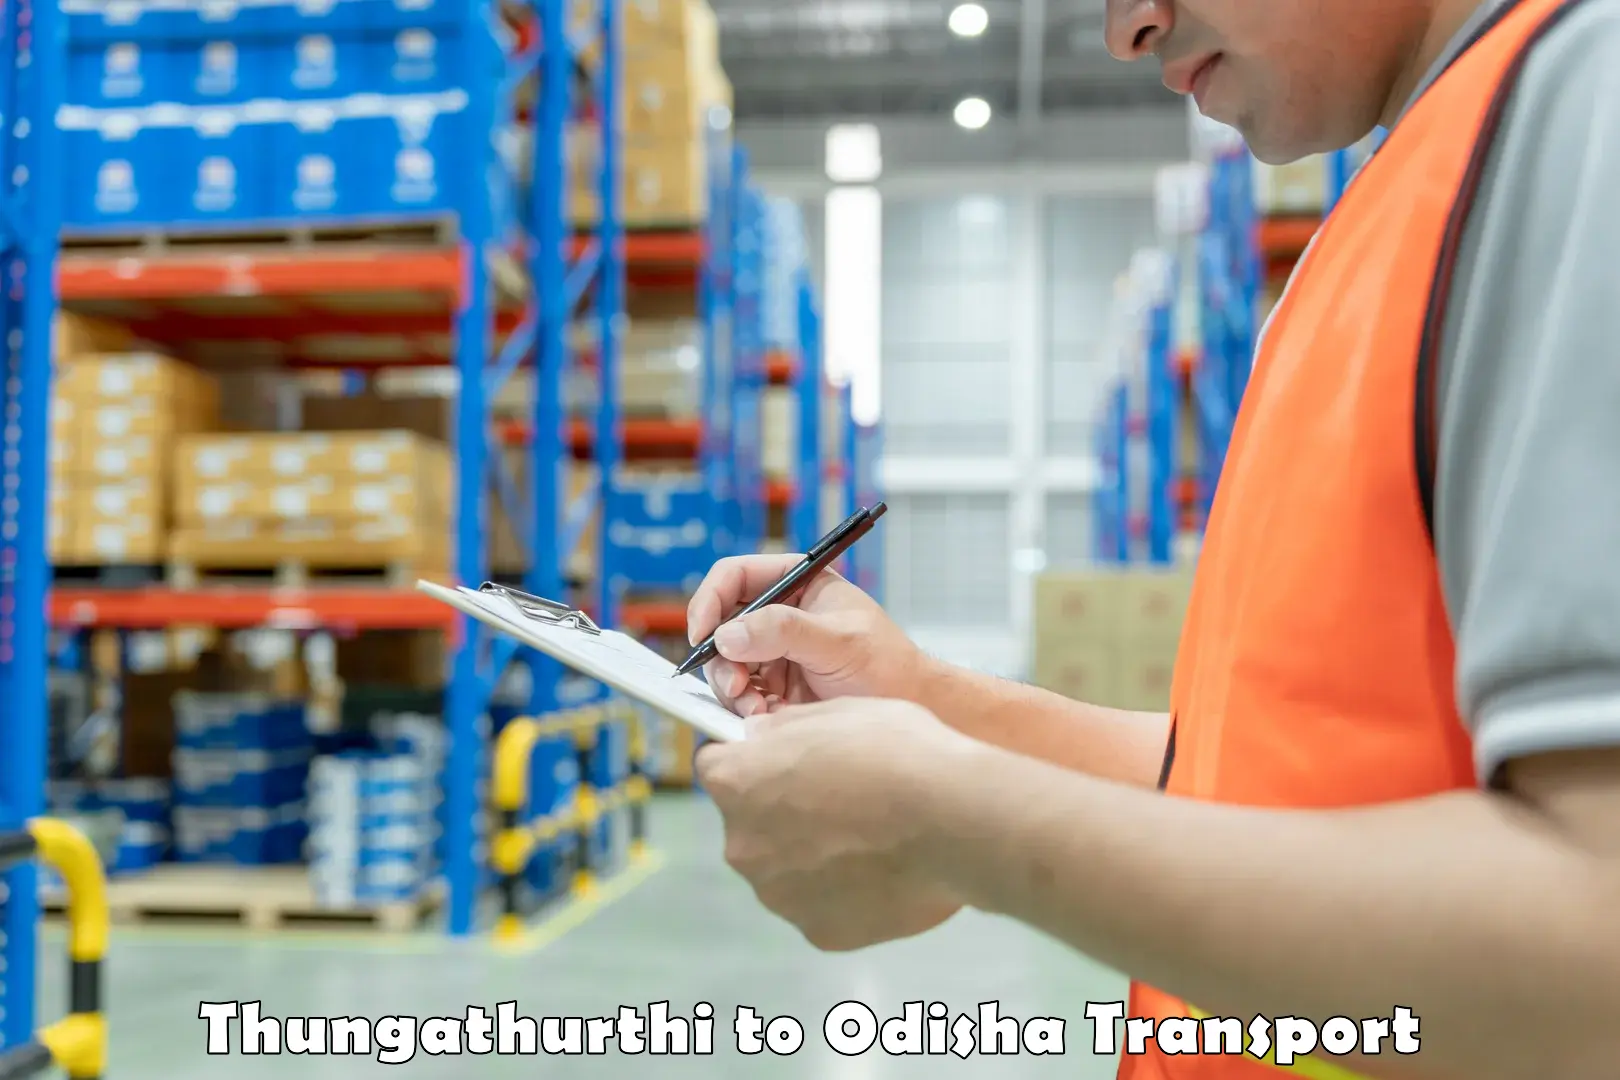 Vehicle courier services Thungathurthi to Kalahandi